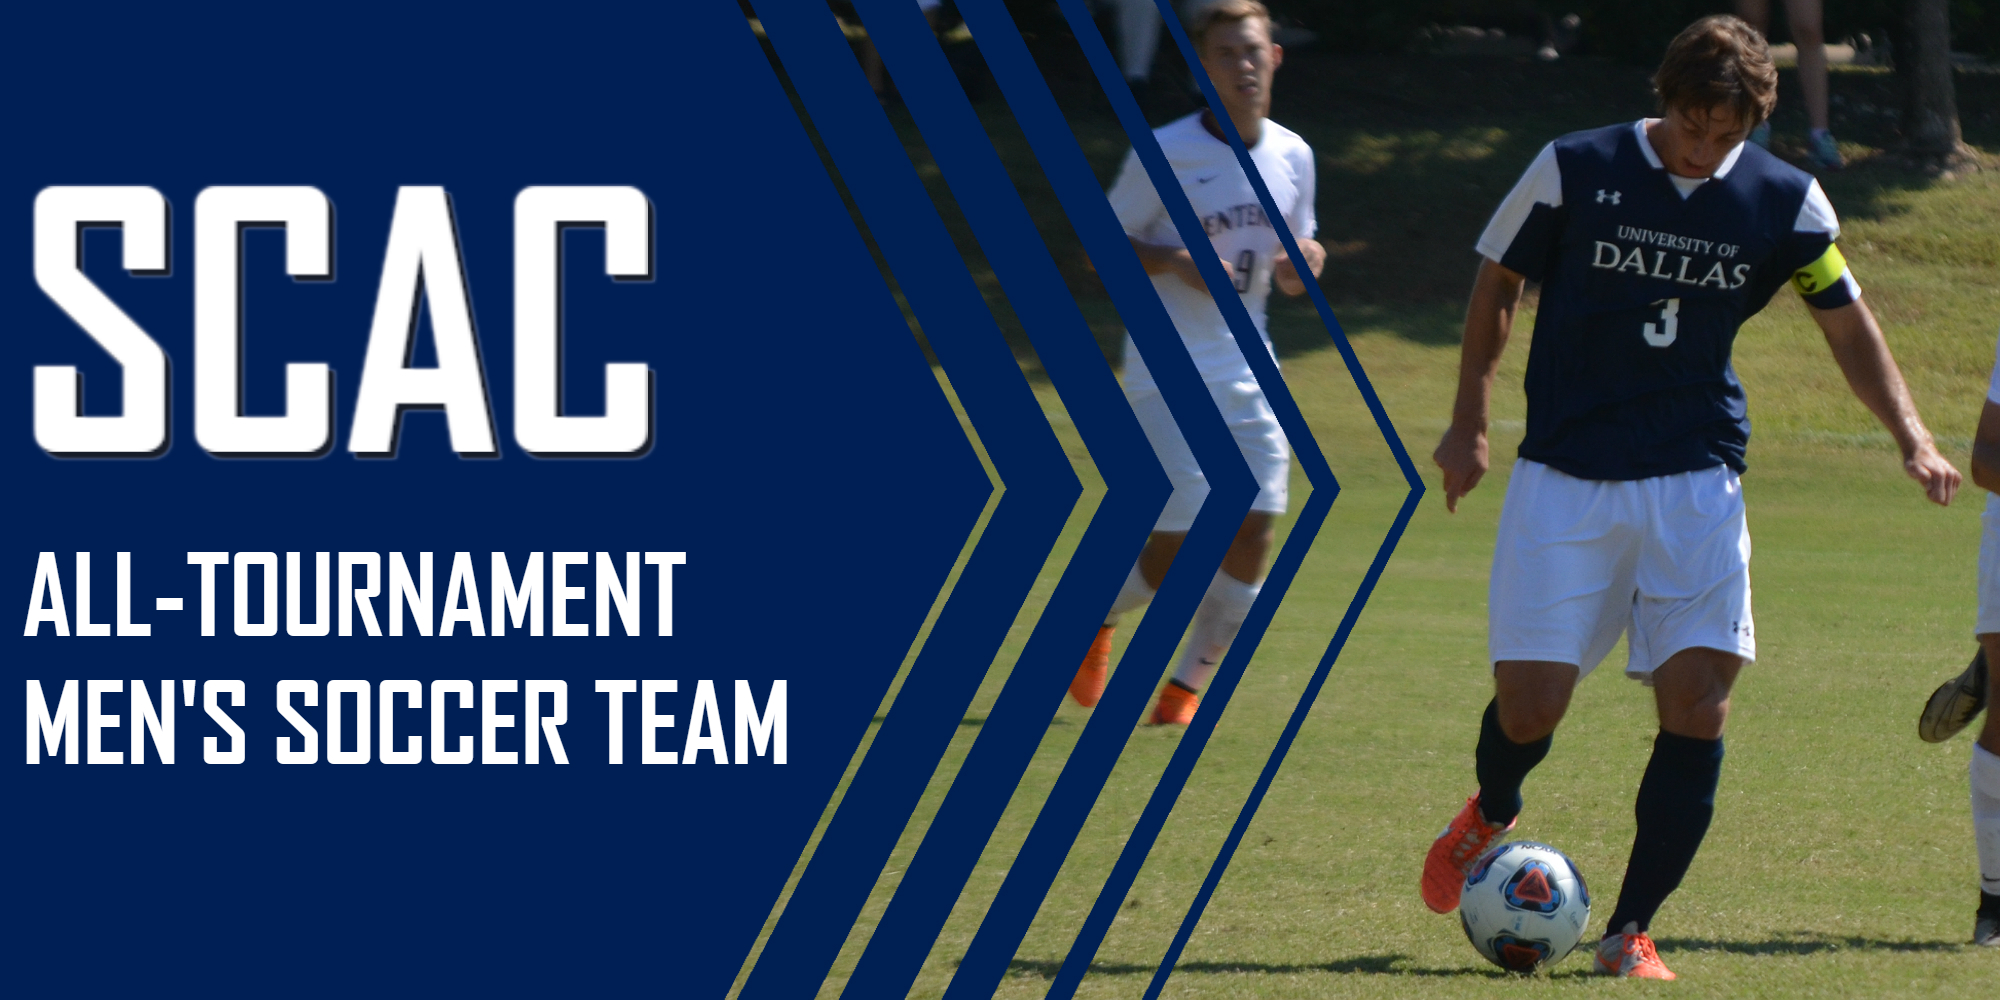 Luke Schwarz Named to SCAC 2016 All-Tournament Men's Soccer Team